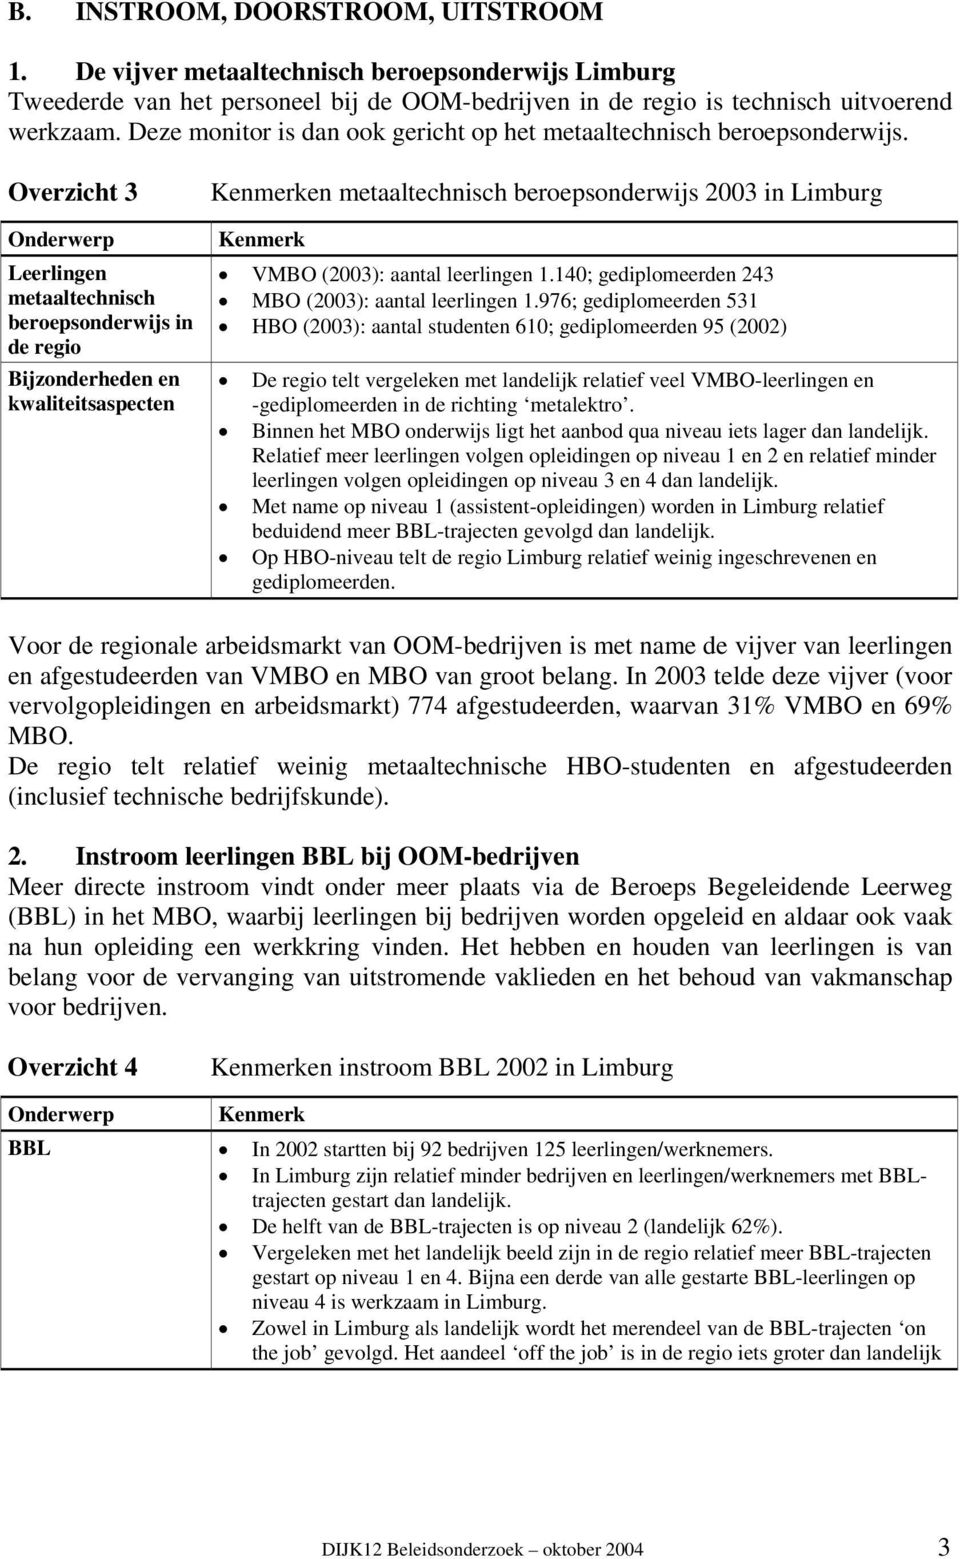 Overzicht 3 Leerlingen metaaltechnisch beroepsonderwijs in de regio Bijzonderheden en kwaliteitsaspecten en metaaltechnisch beroepsonderwijs 2003 in Limburg VMBO (2003): aantal leerlingen 1.